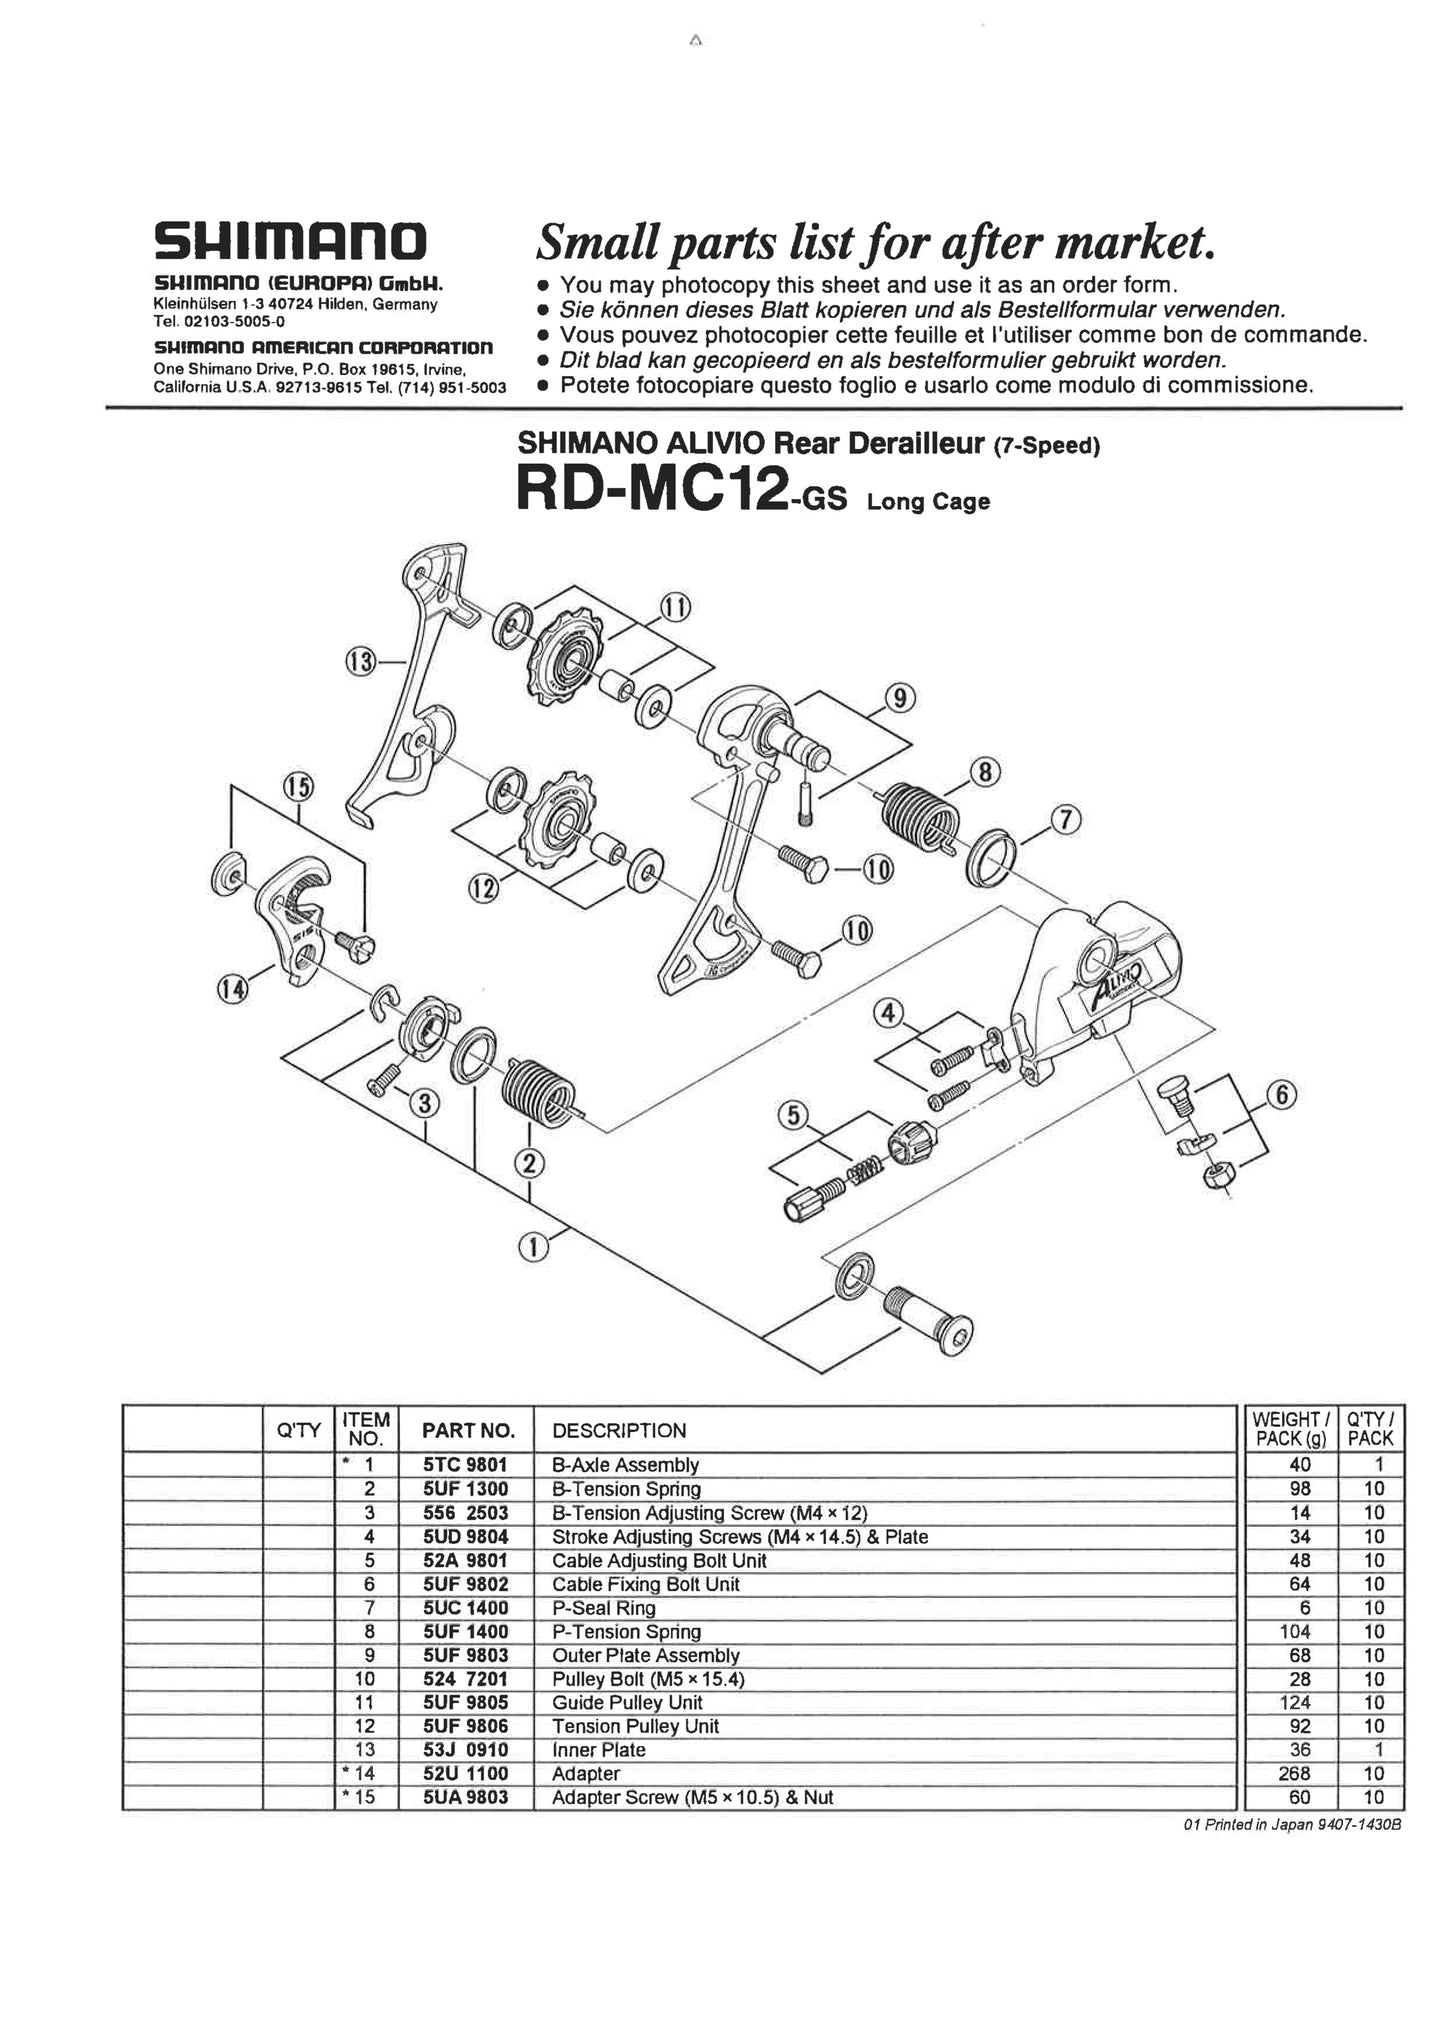 SHIMANO Alivio RD-MC12-GS Rear Derailleur 7-Speed P-Tension Spring - Y5UF14000-Pit Crew Cycles